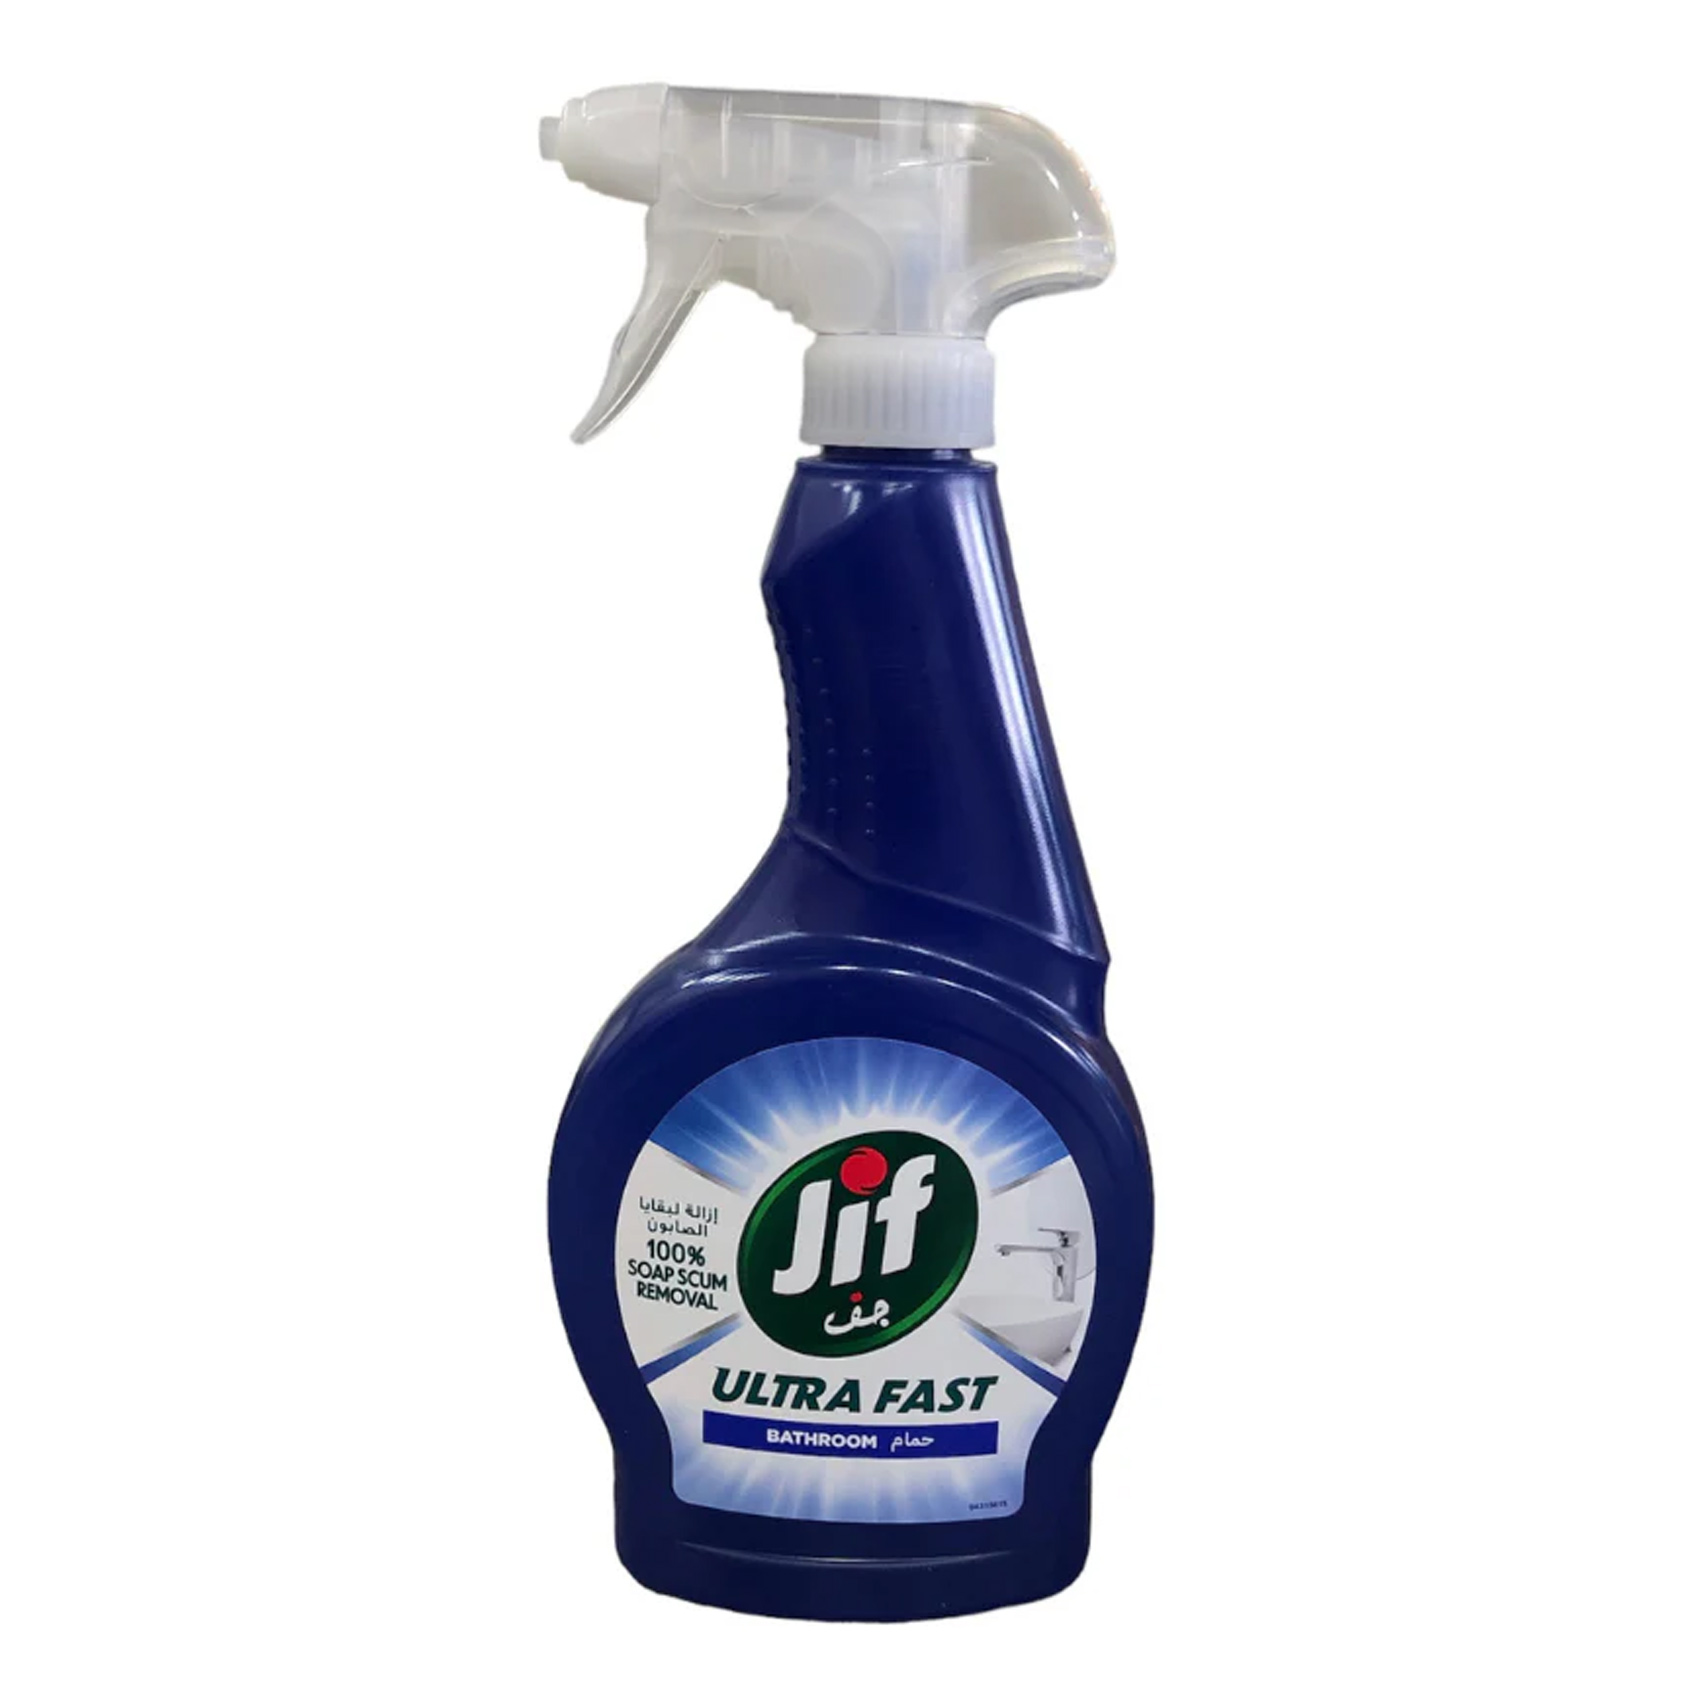 Jif Ultra Fast Bathroom Cleaner Spray 500ml